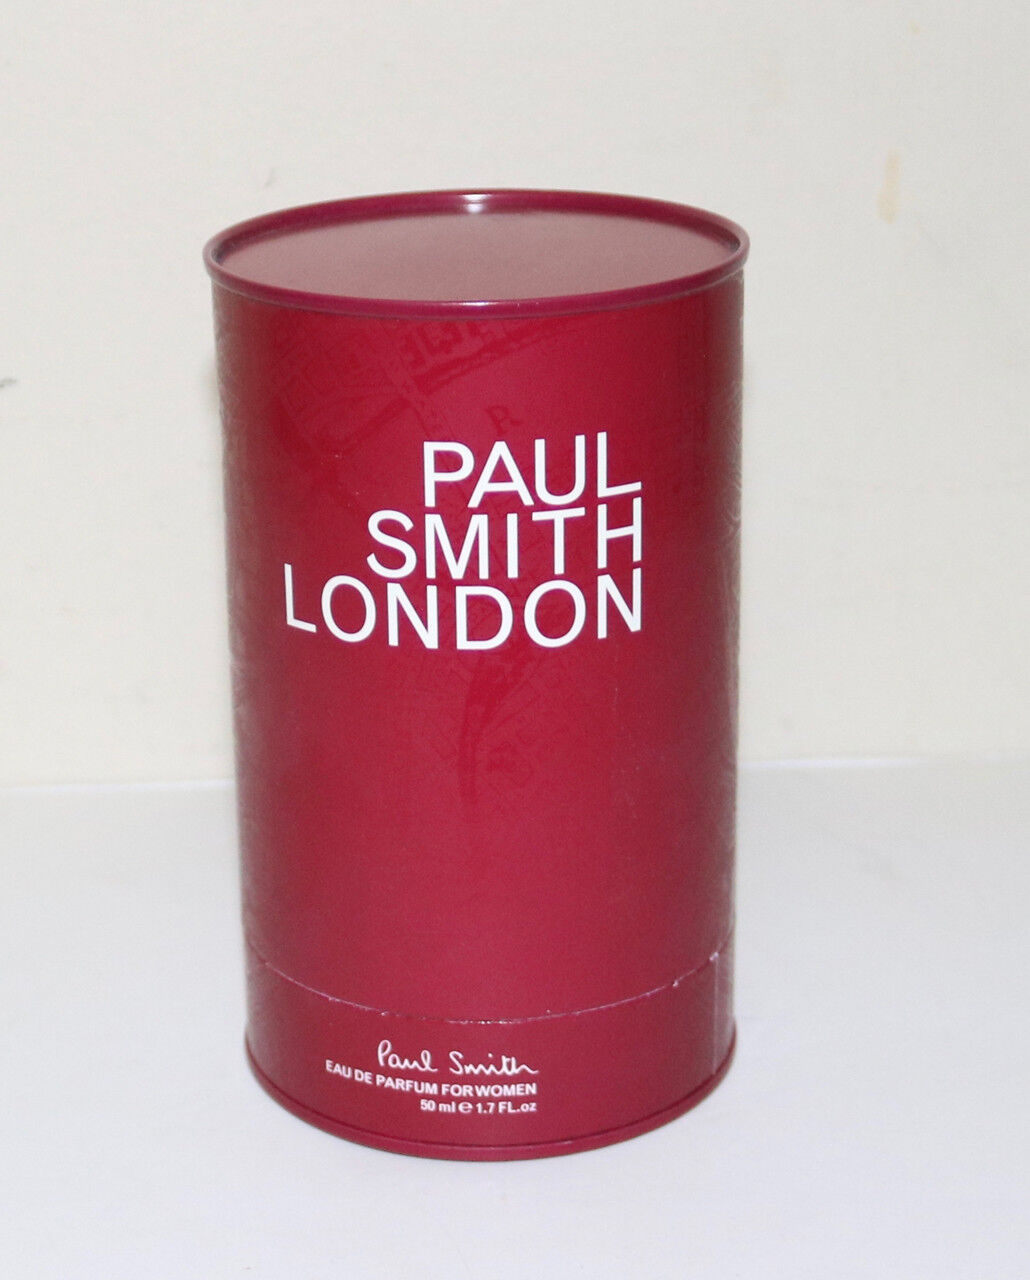 Paul Smith London eau de parfum 1.7 fl oz in container